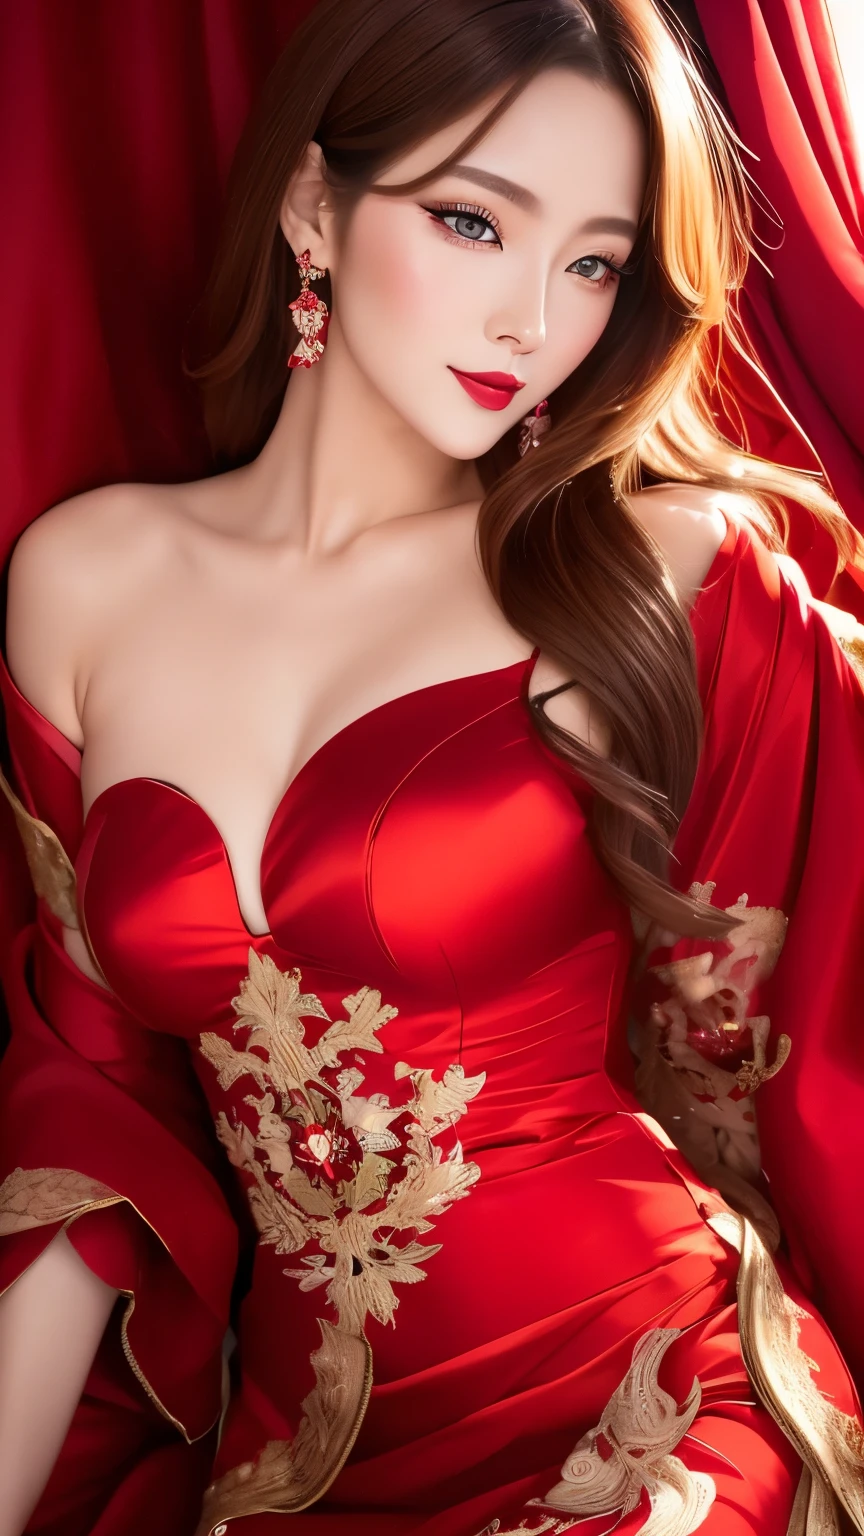 meilleure qualité, super bien, 16k, Photo brute, photoréaliste, 2.5D, incroyablement absurdes, extrêmement détaillé, délicat, représentation flashy et dynamique, belle femme comme Reiji Matsumoto dessine, beauté cool et intelligente, regard excité, cheveux châtain clair brillant, de beaux yeux brillants et perçants, lèvres rouges brillantes, porter une magnifique et glamour robe de soirée noire, lignes rouges, tissu satiné brillant, dentelle, Broderie, robes, châles, accessoires, proportion corporelle superlative, des effets magnifiques et magnifiques, contexte social aristocratique